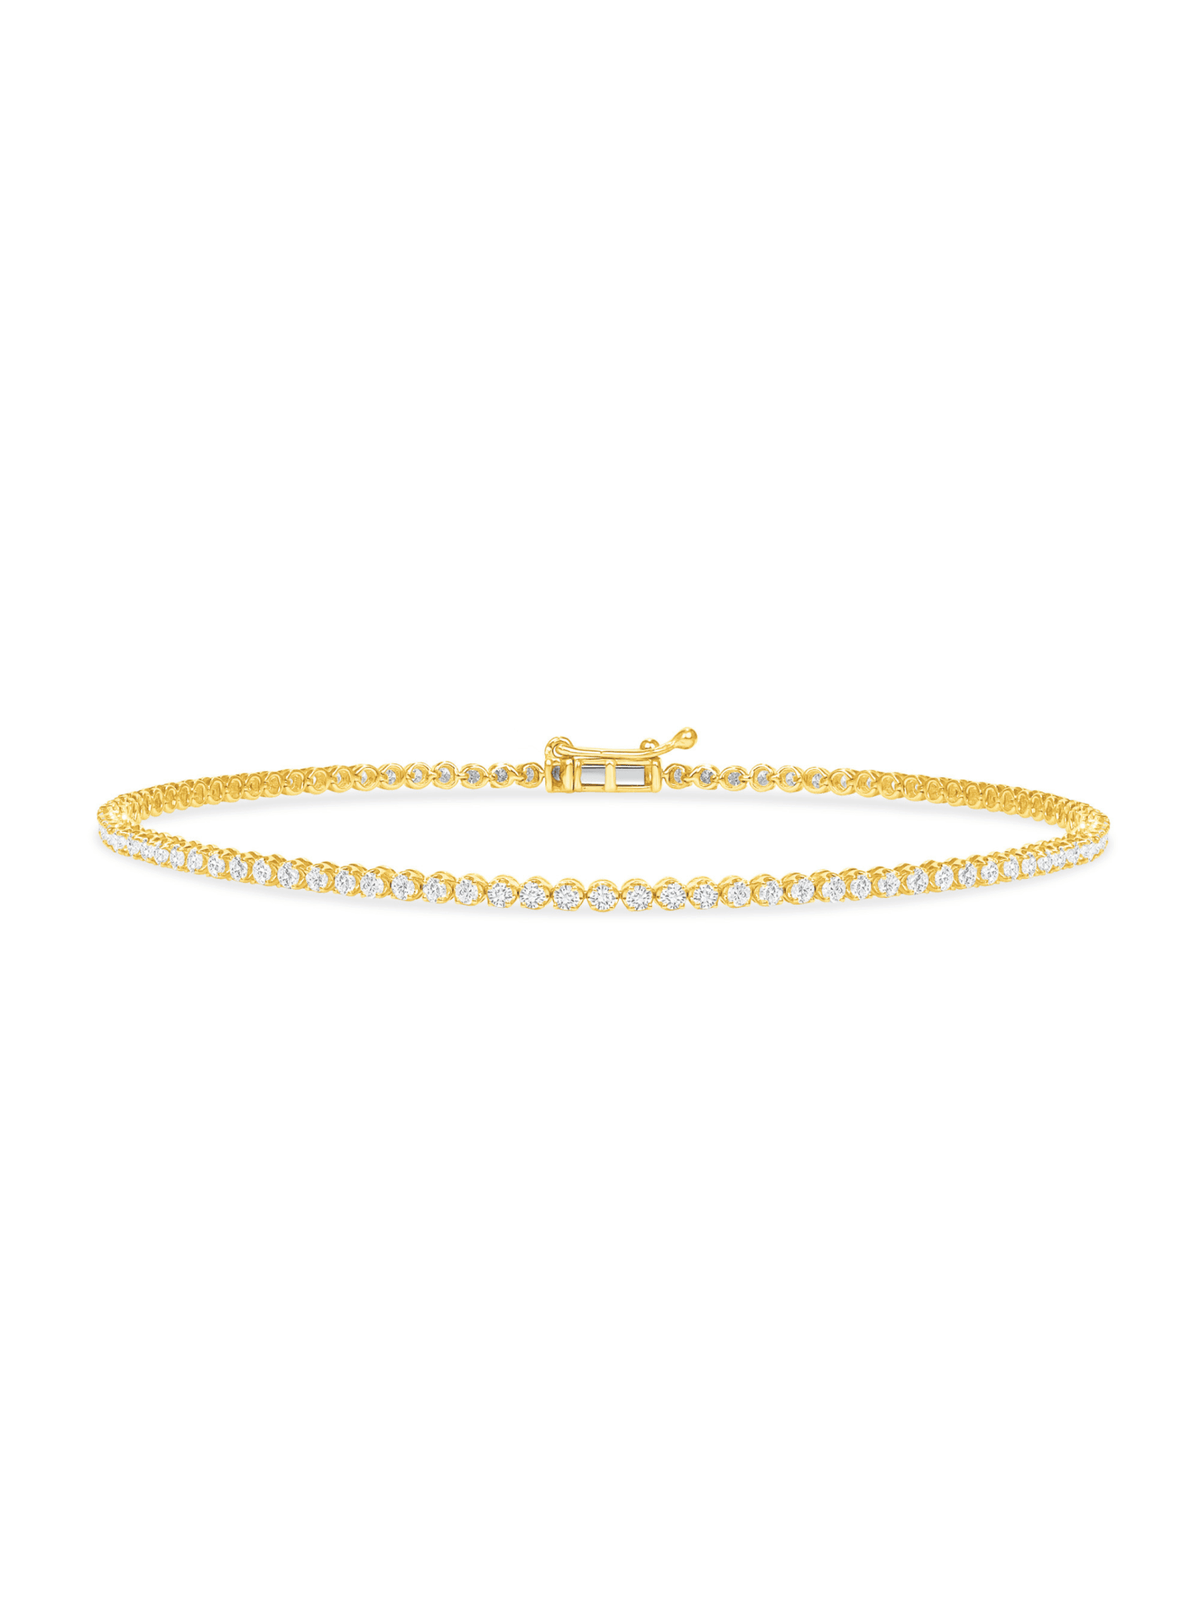 Simple Diamond Tennis Bracelet 14K - LeMel